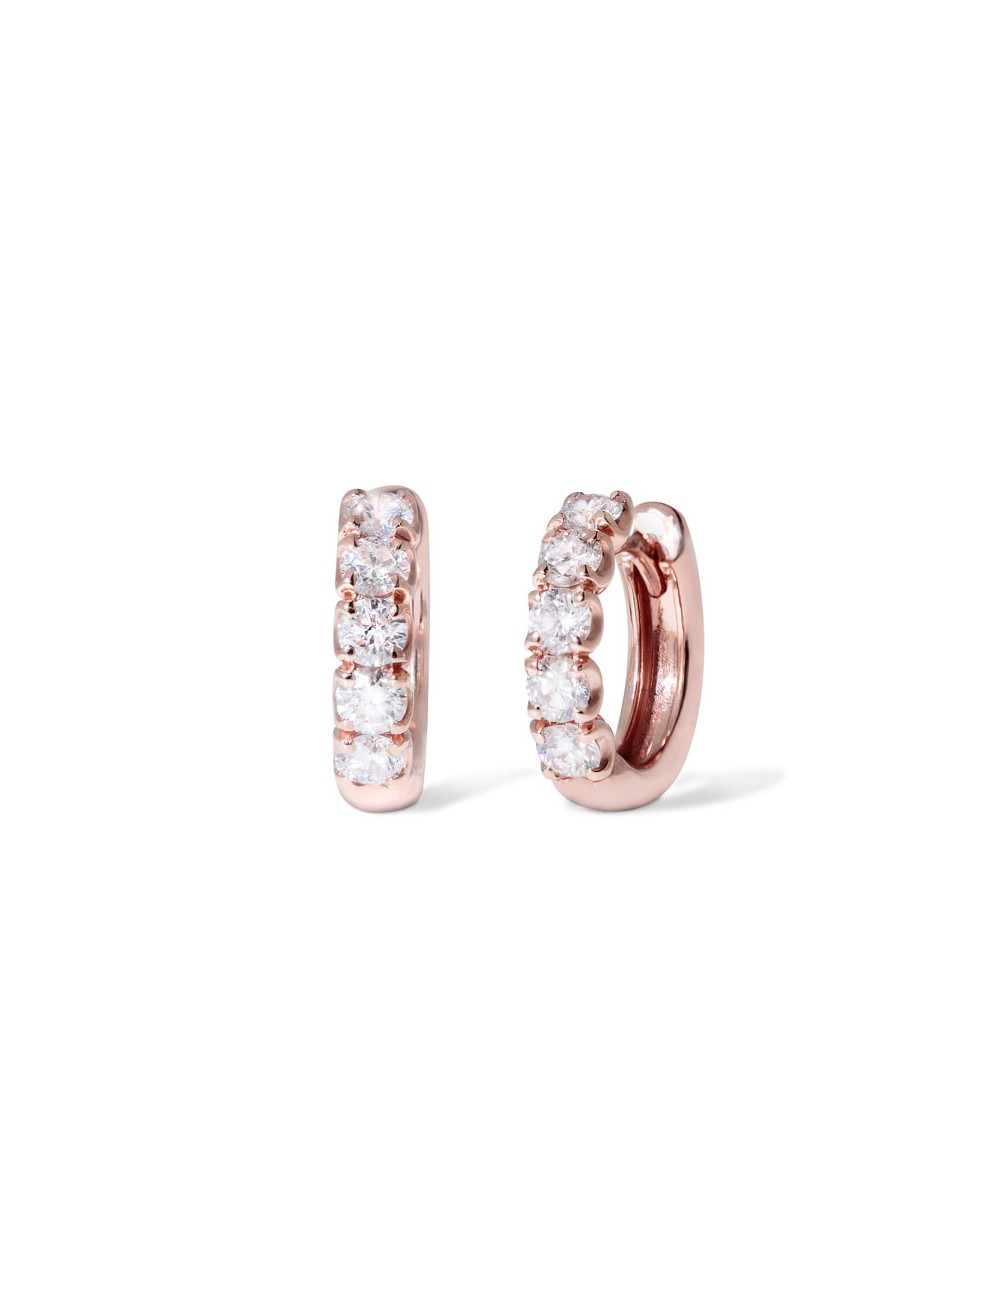 Sardà -Pendientes de aro de oro rosa con diamantes -FO2147R001